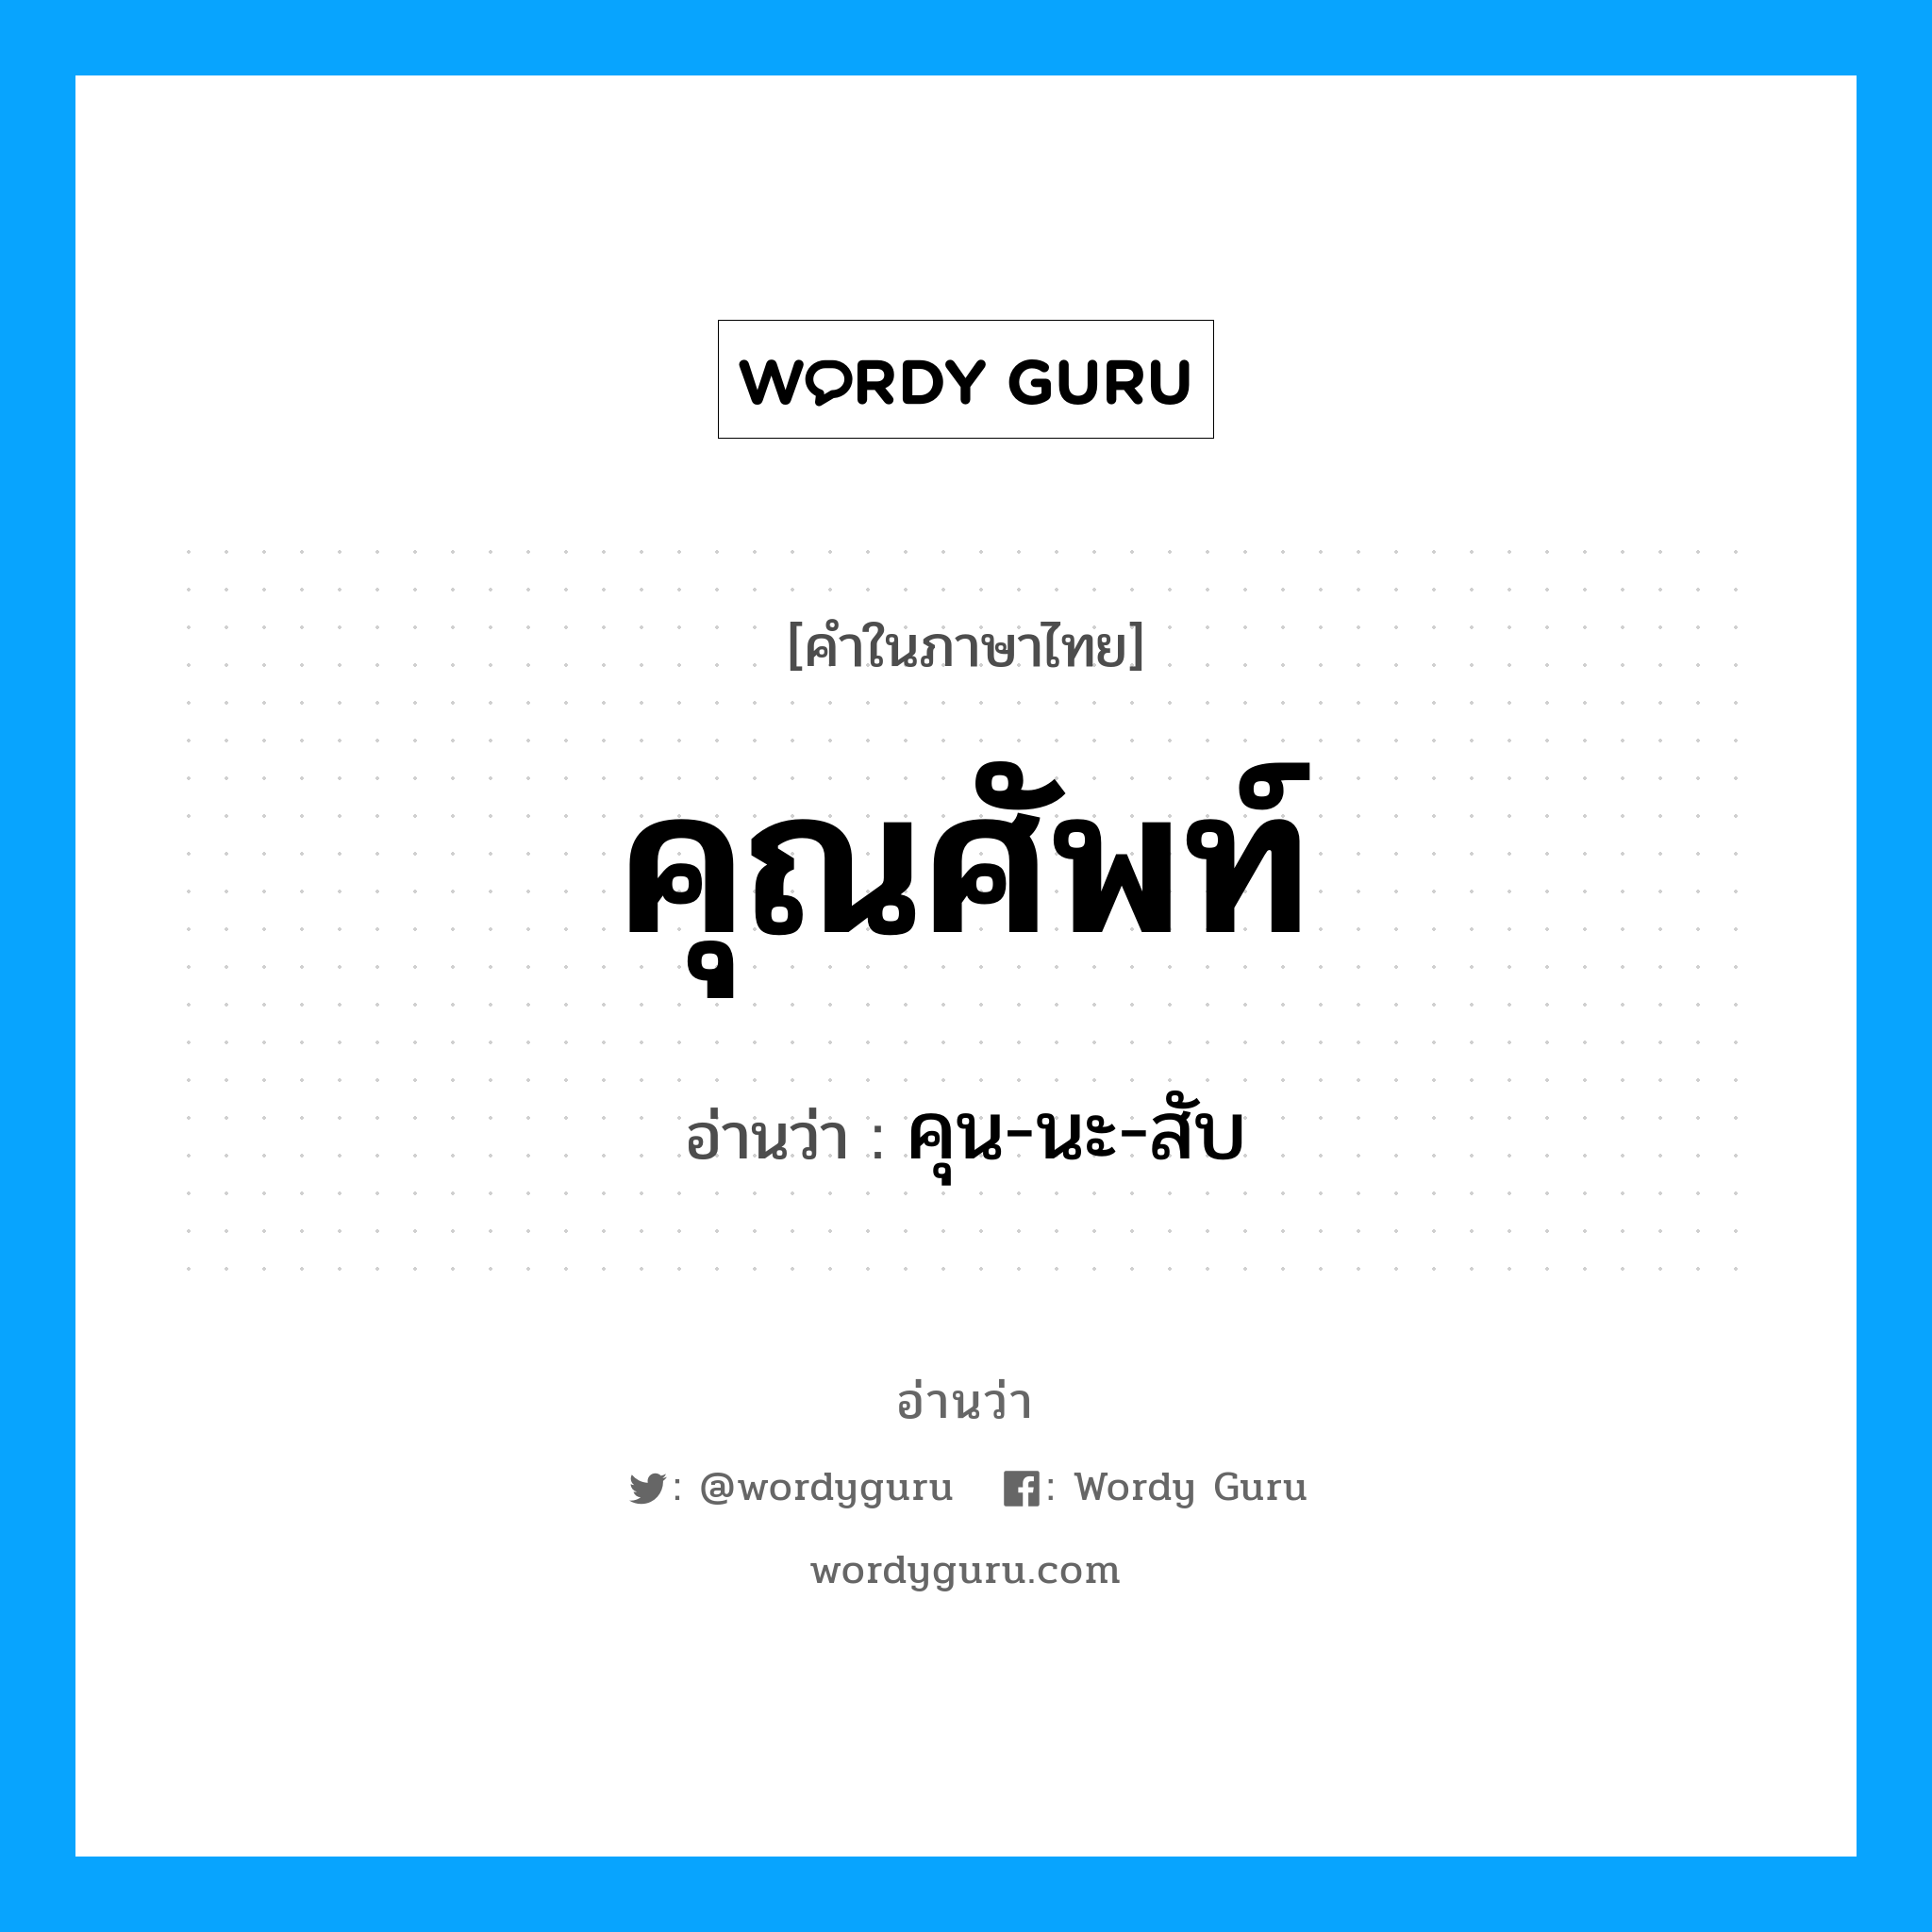 คุน-นะ-สับ เป็นคำอ่านของคำไหน?, คำในภาษาไทย คุน-นะ-สับ อ่านว่า คุณศัพท์